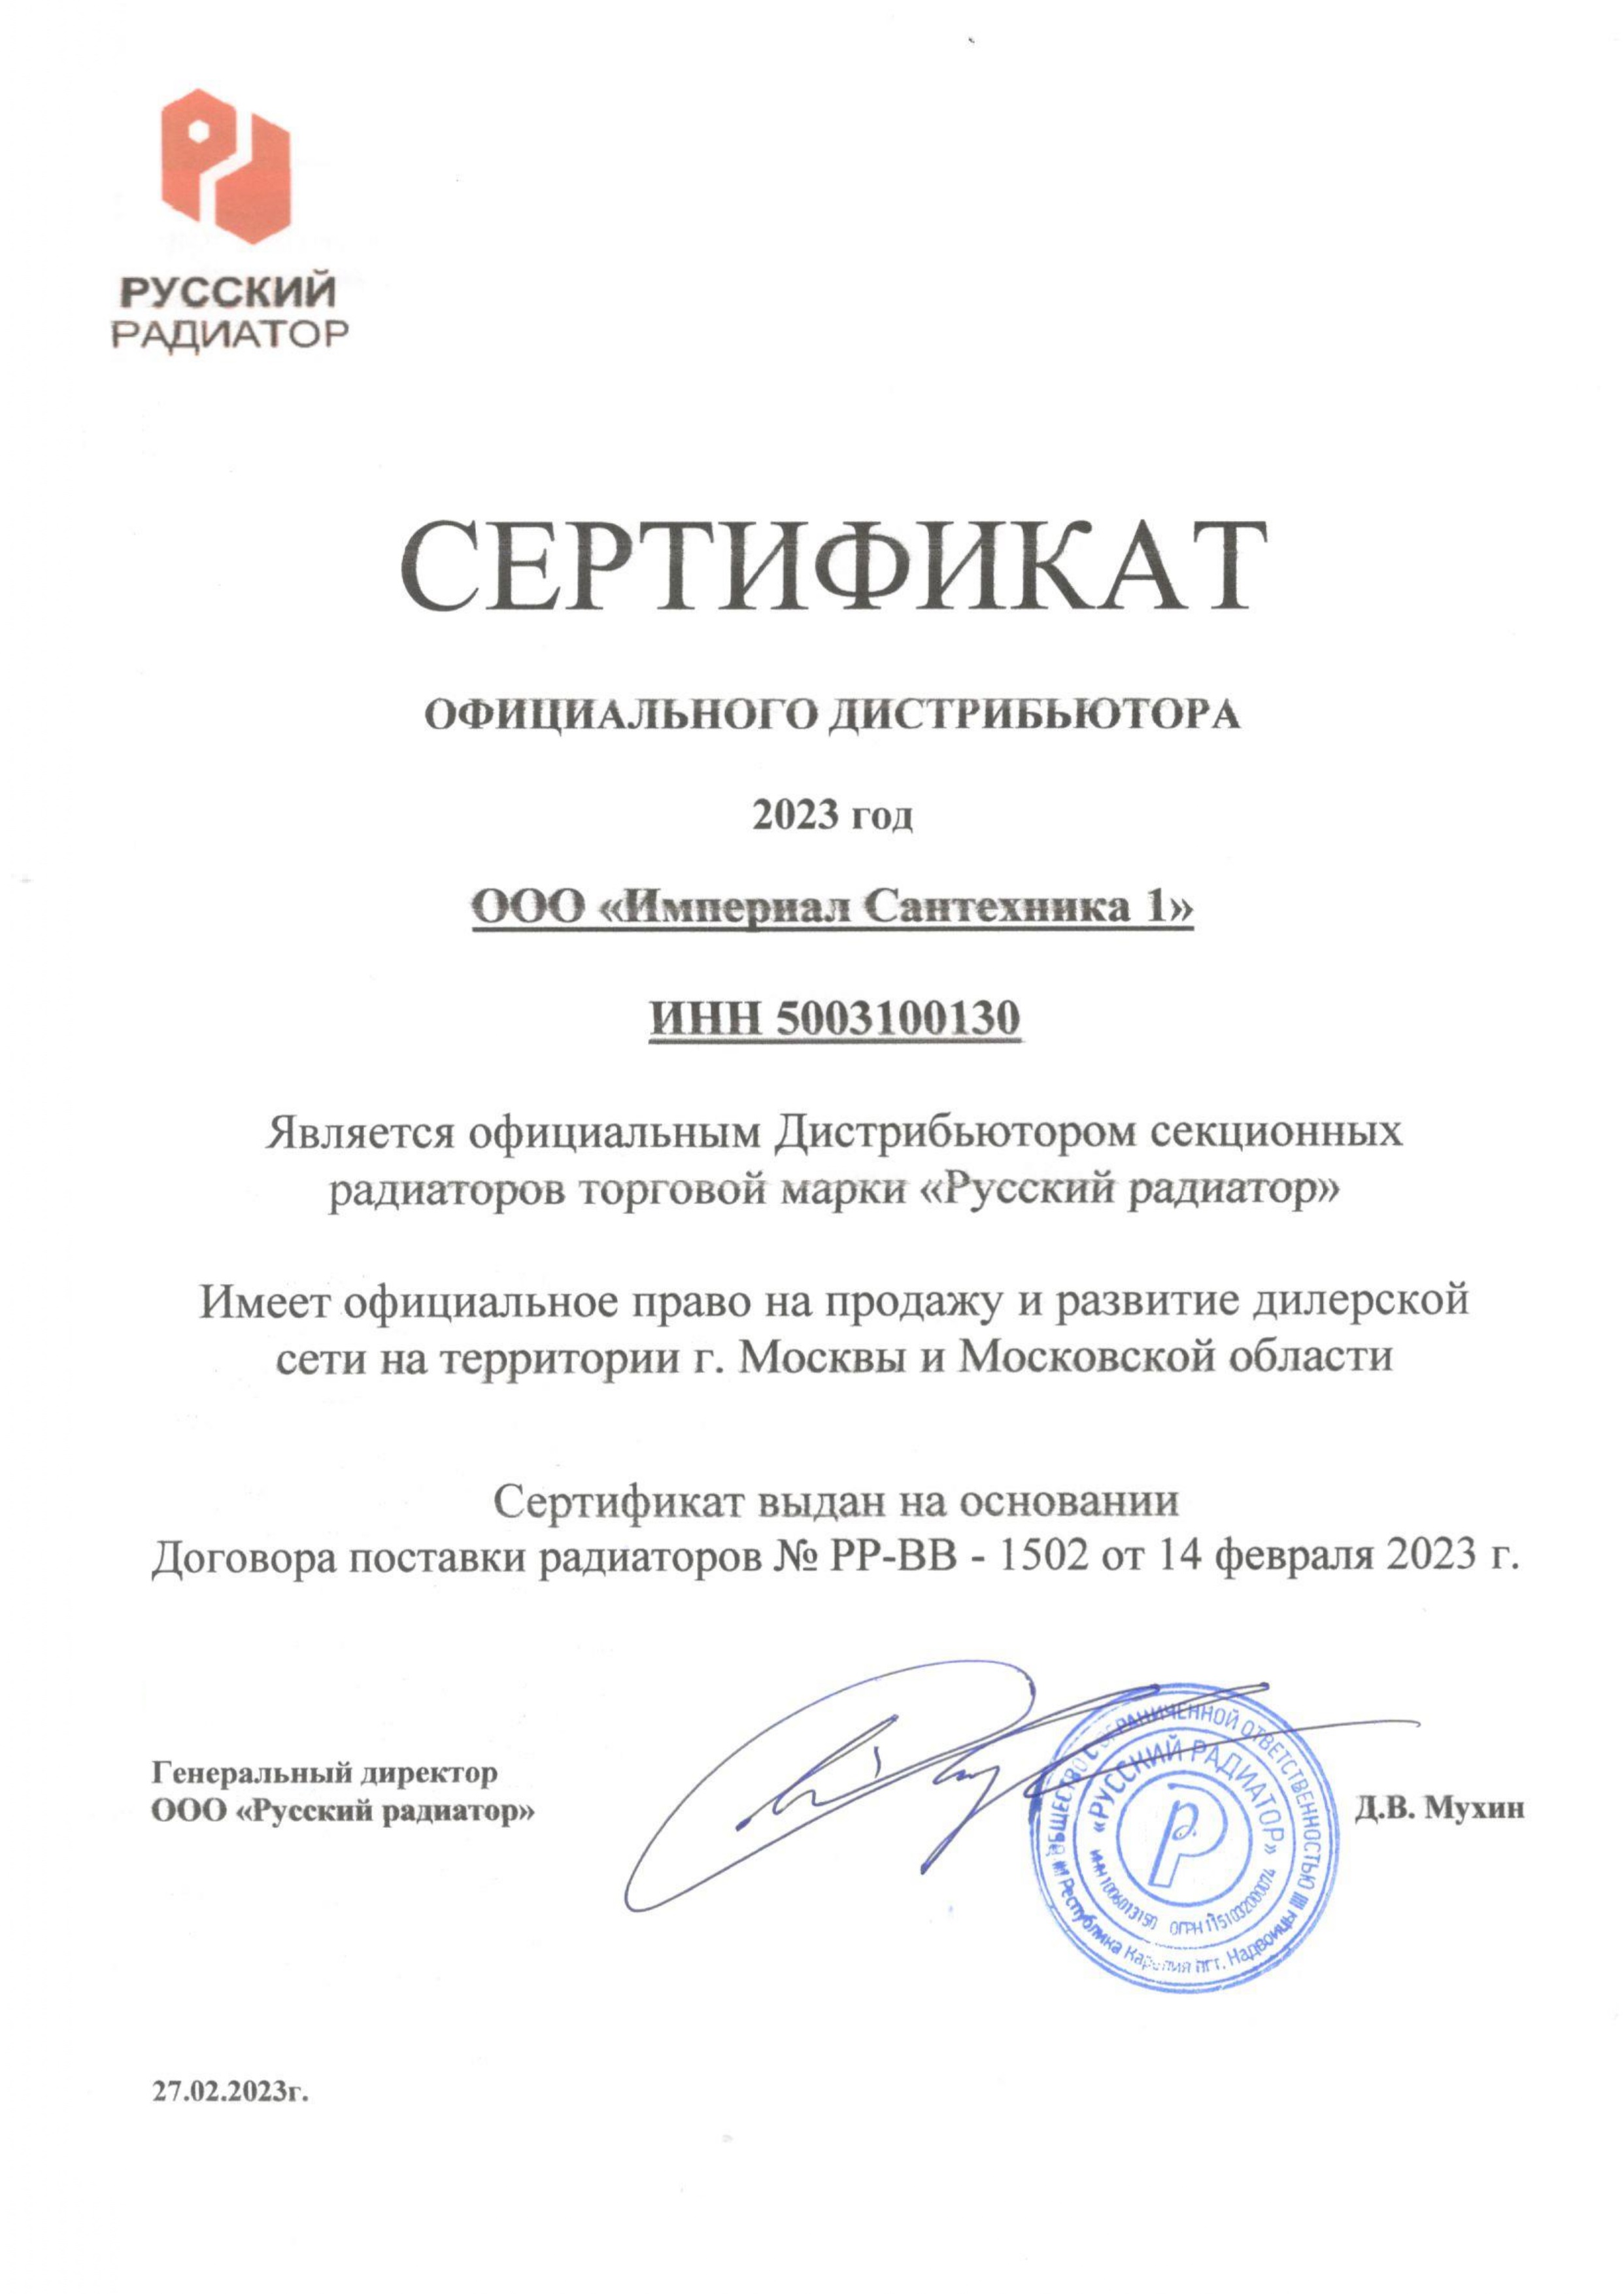 Сертификат официального дистрибьютора секционных радиаторов торговой марки РУССКИЙ РАДИАТОР 2023 г..jpg